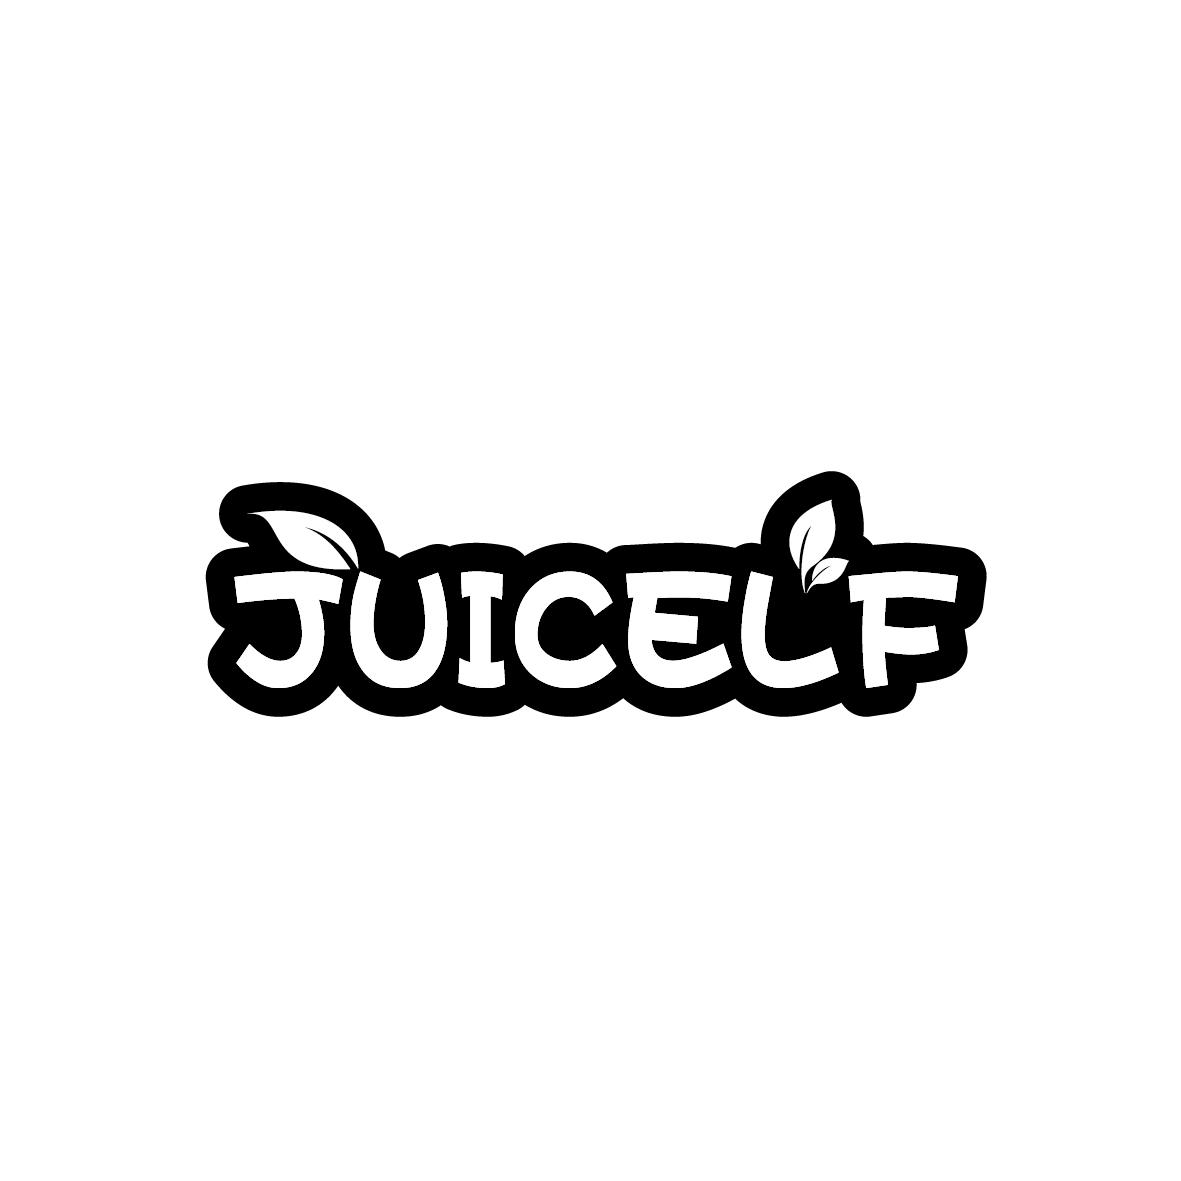 JUICELF